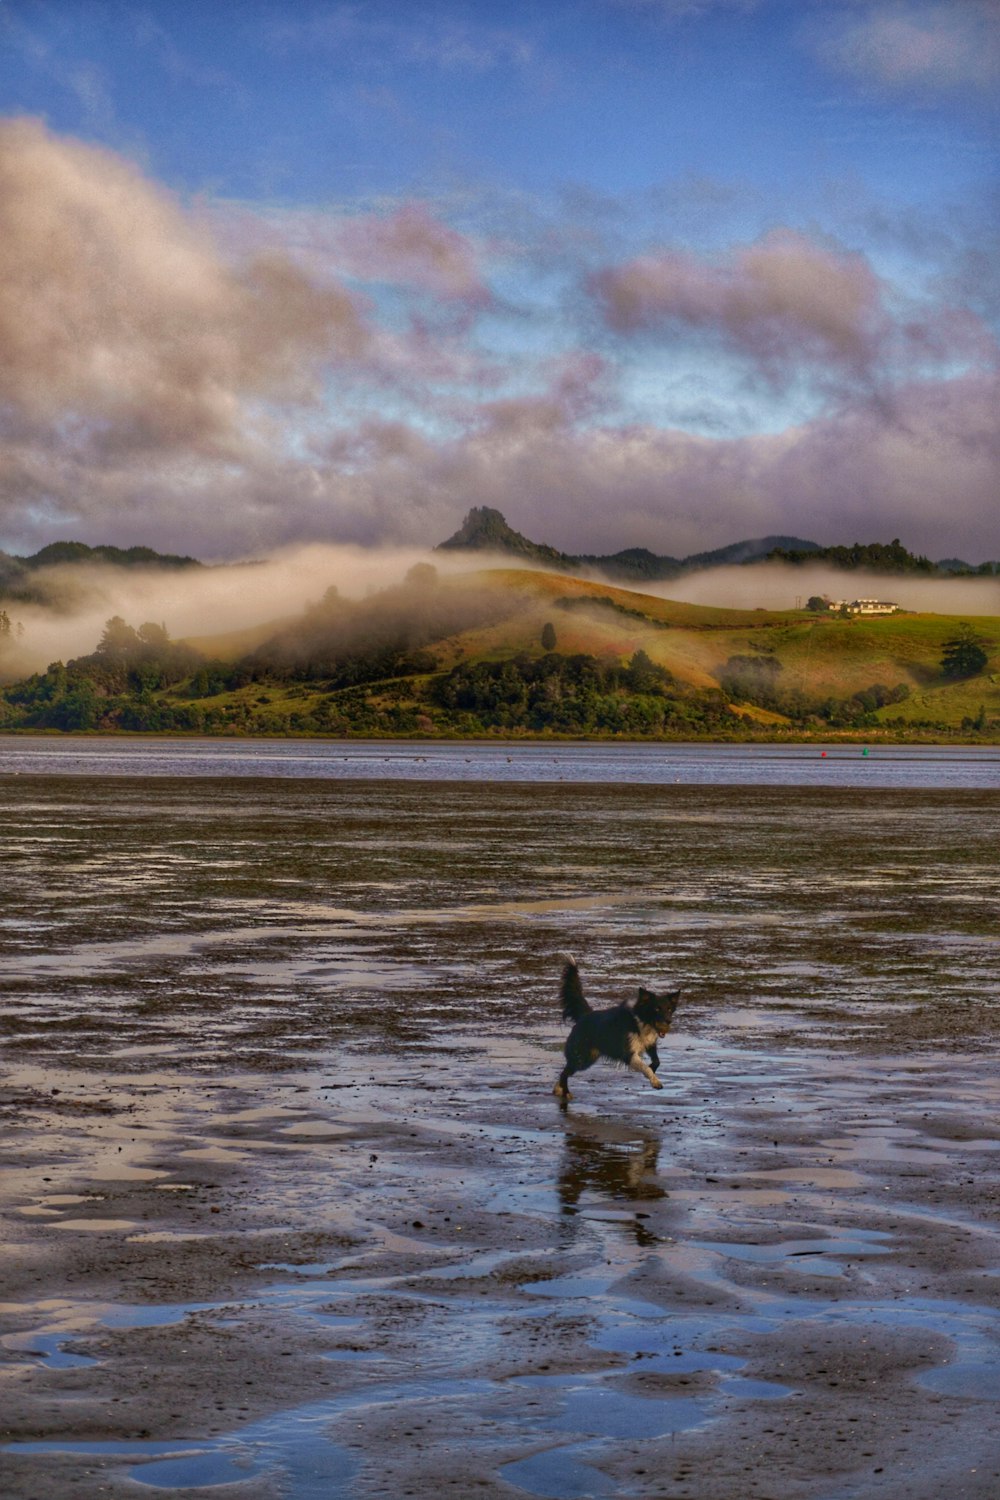 a dog walking across a wet beach under a cloudy sky